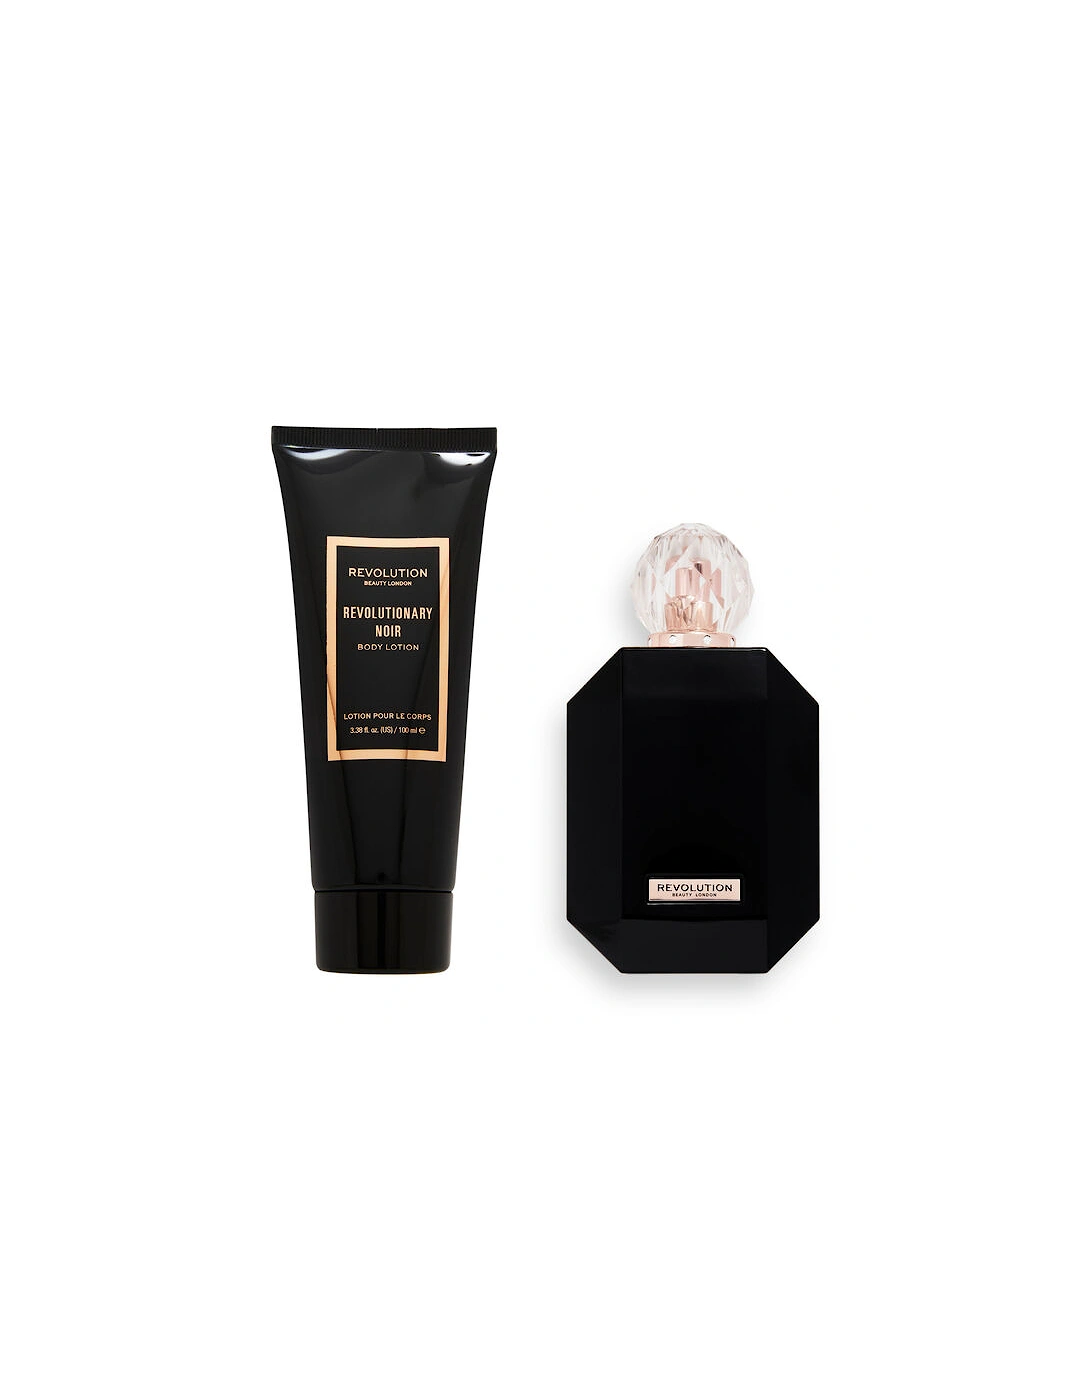 Makeup Revolutionary Noir Eau De Toilette & Body Lotion Gift Set, 2 of 1